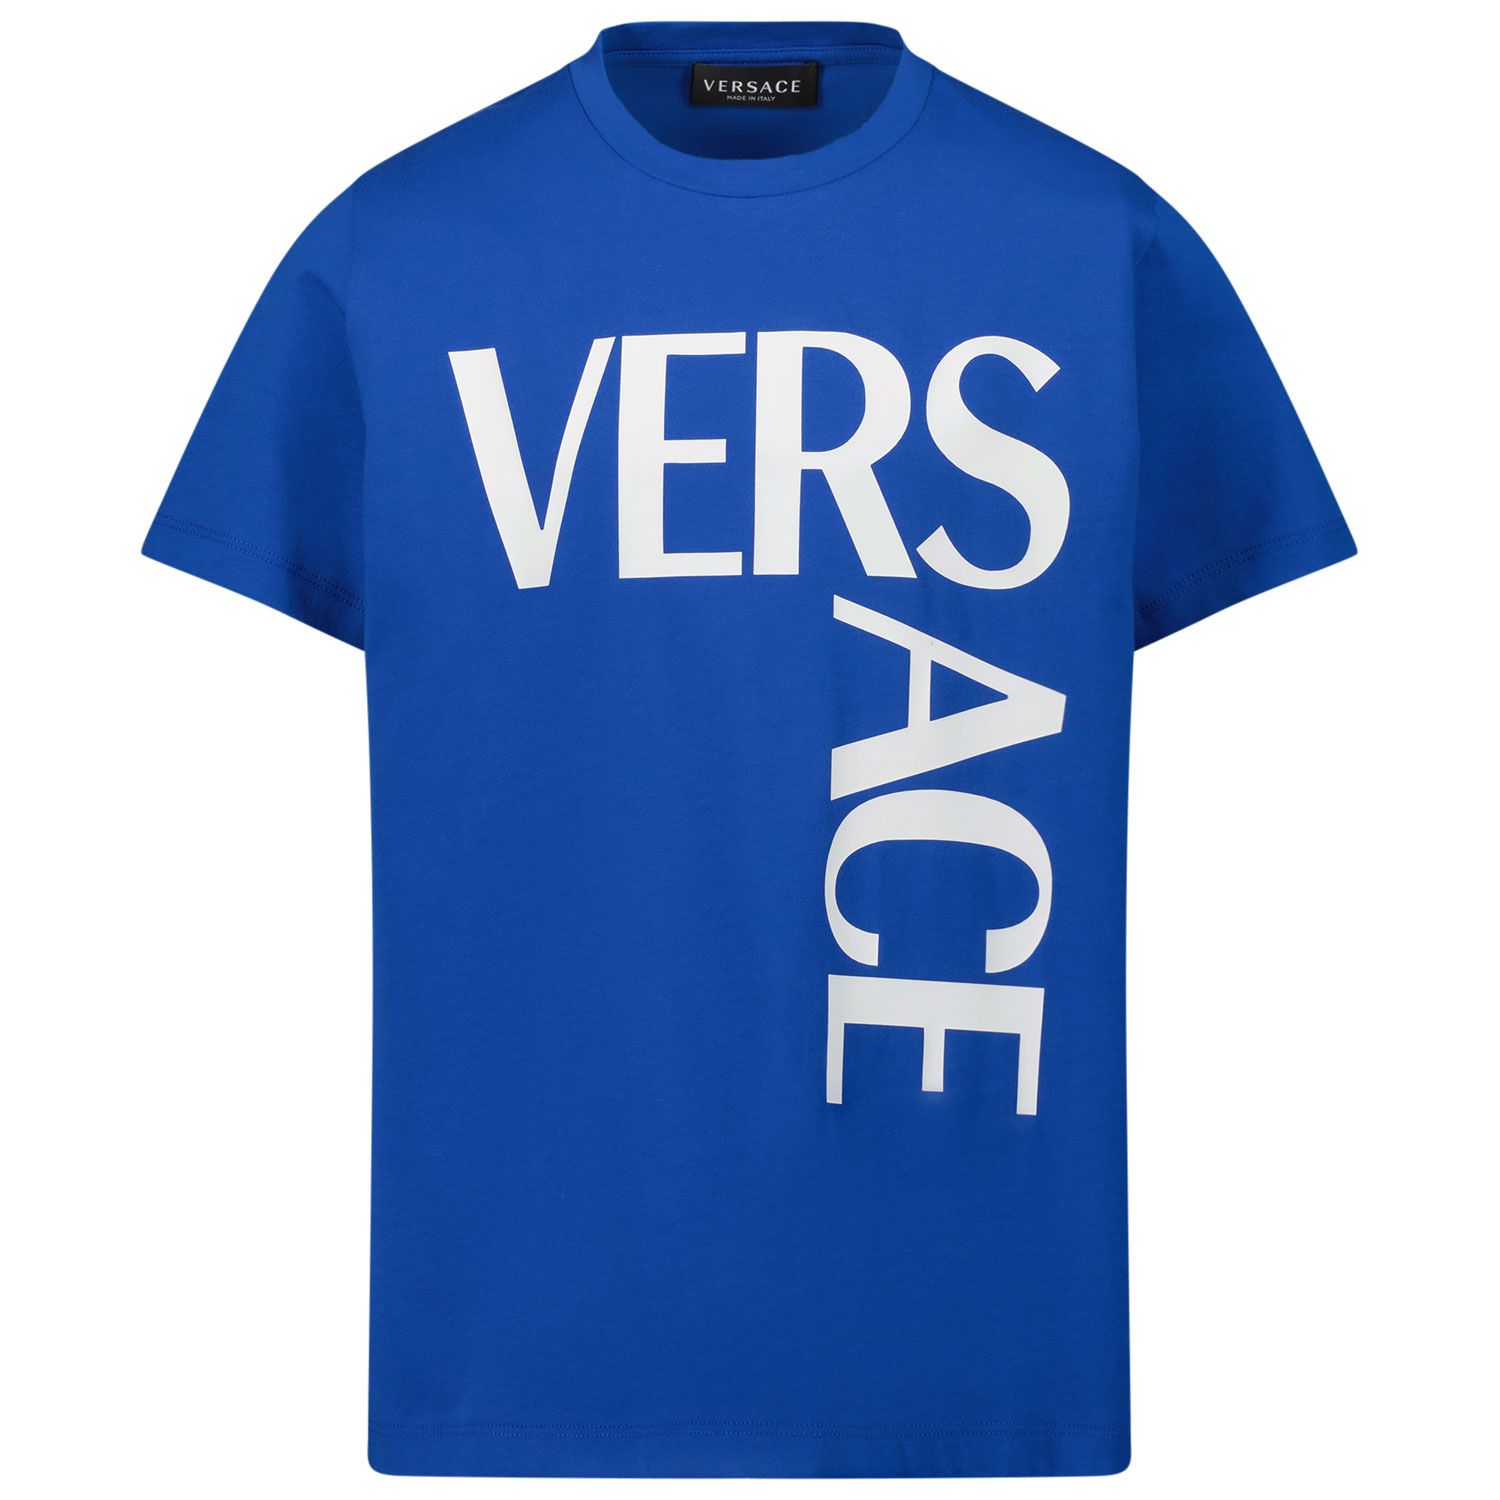 Bild von Versace 1000239 1A01330 Kindershirt Kobaltblau